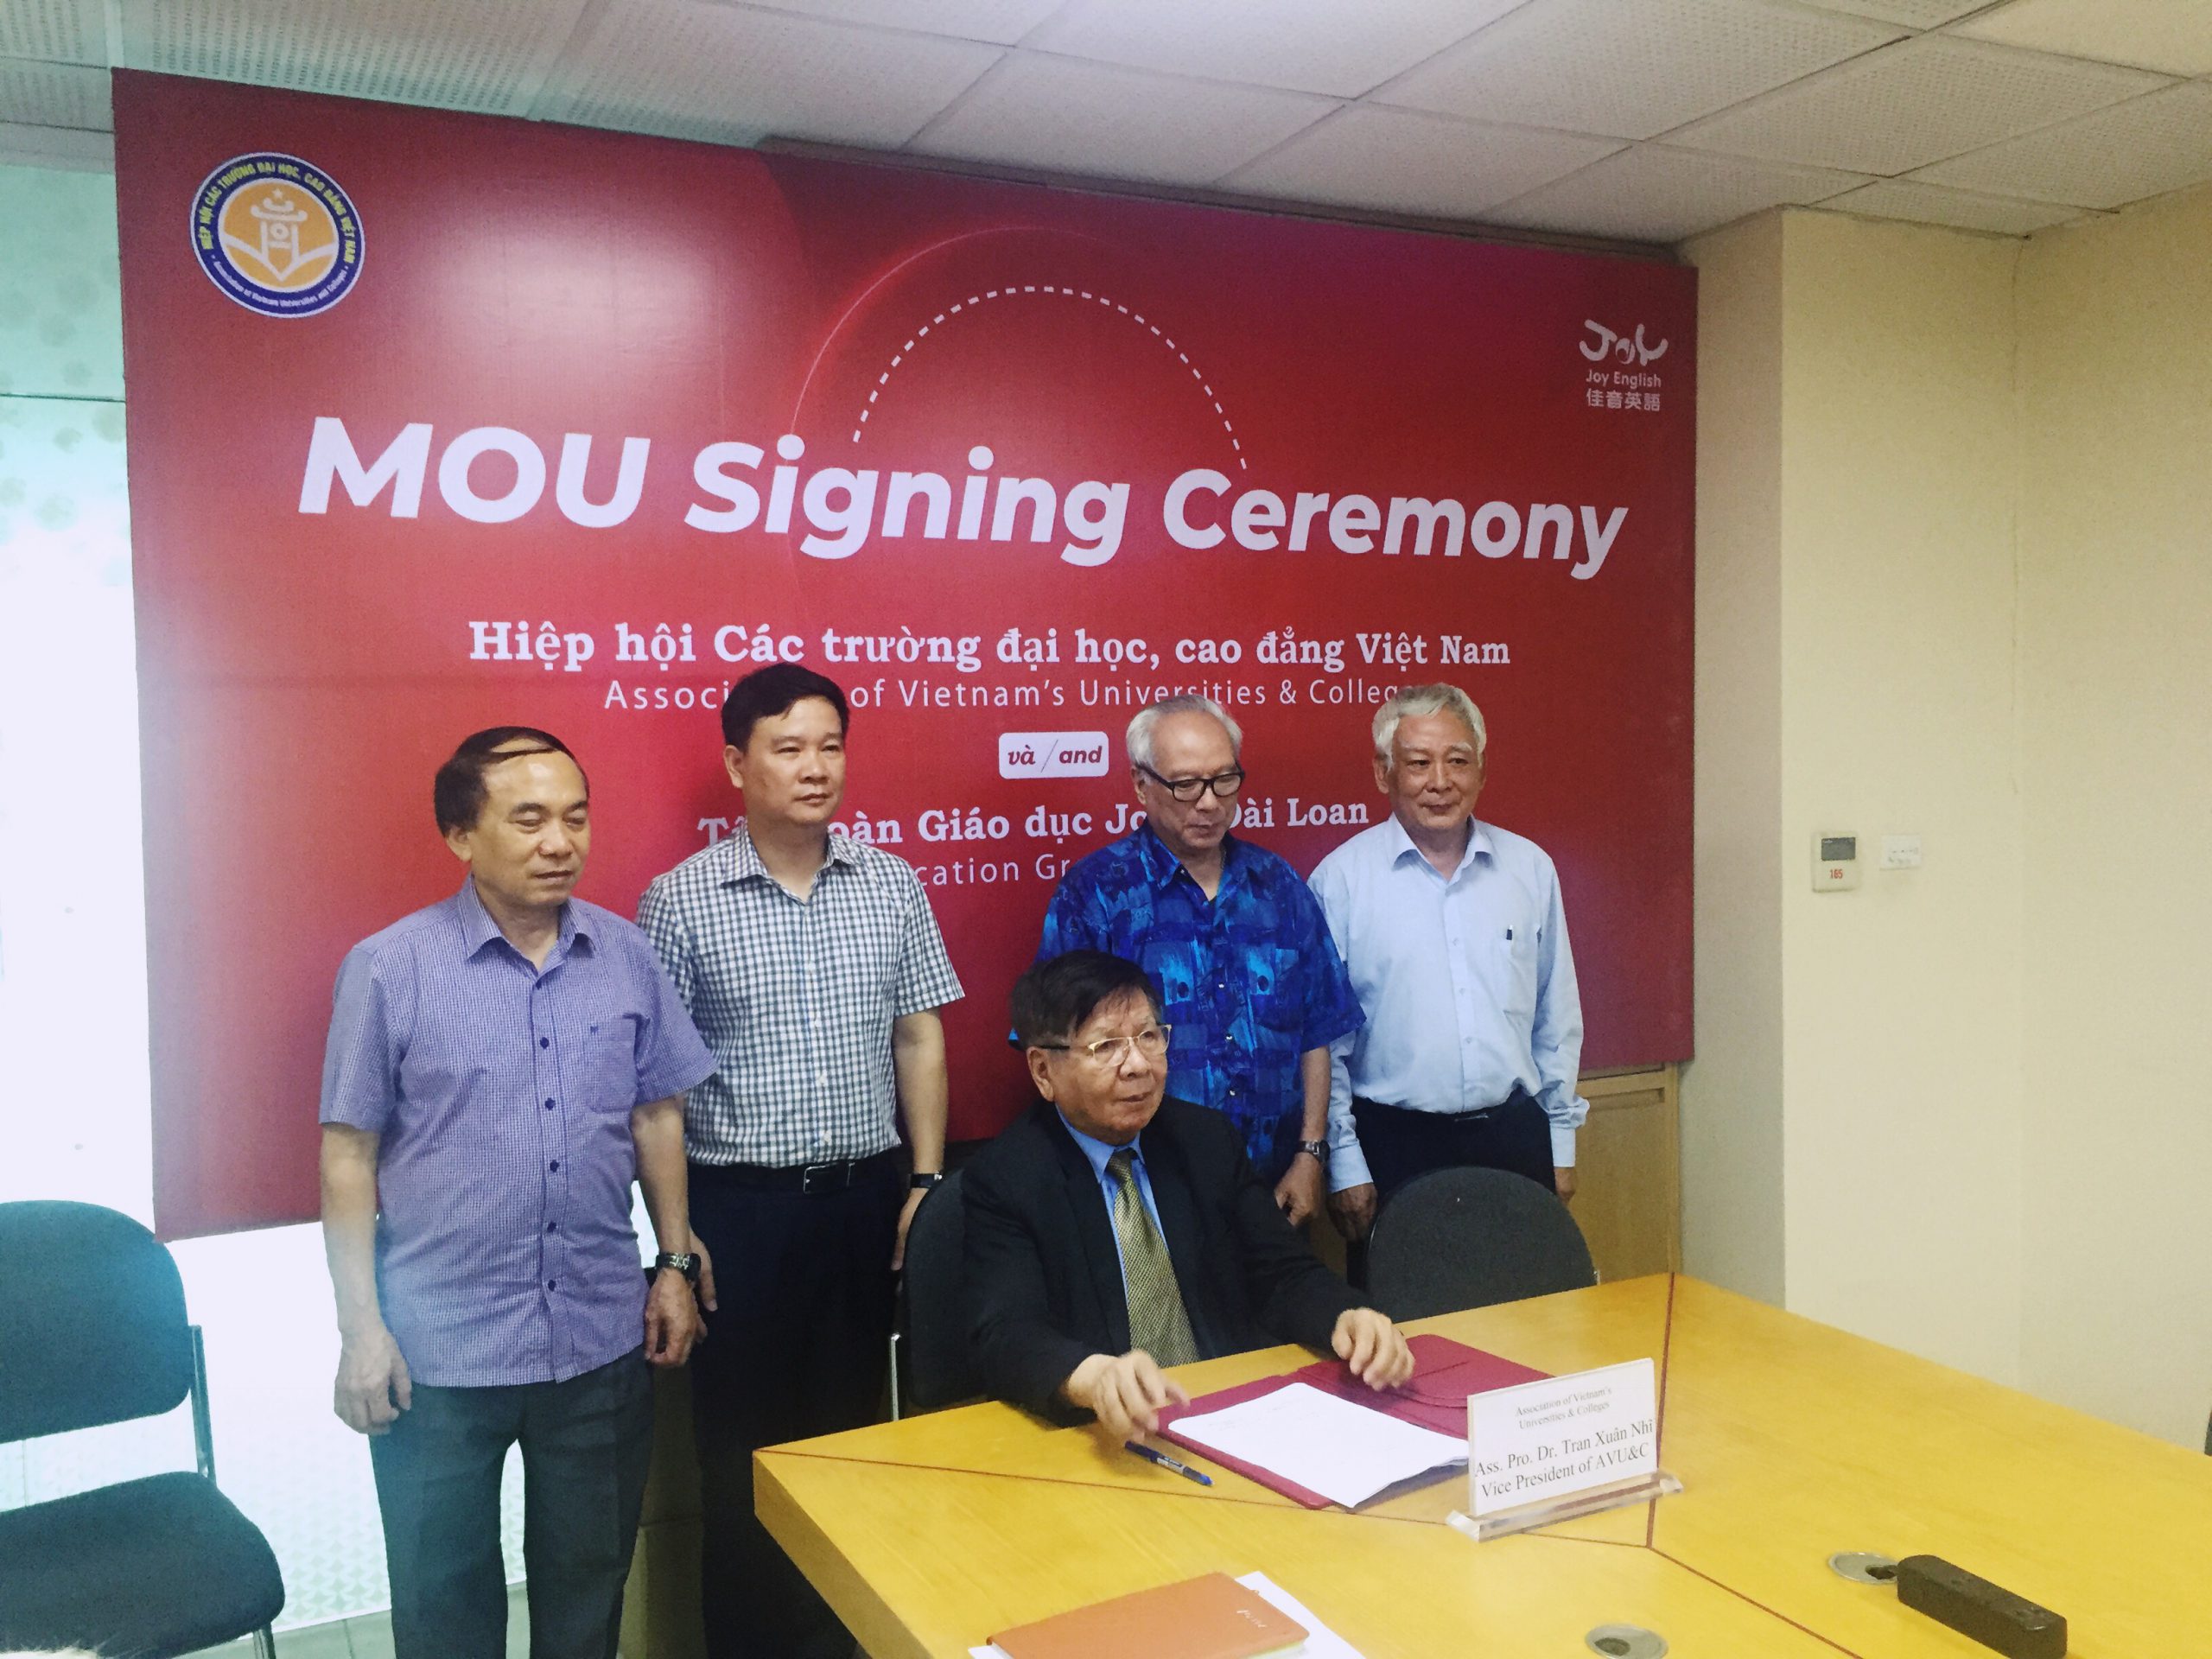 Lễ ký kết trực tuyến Hợp tác giáo dục giữa Hiệp hội các trường đại học, cao đẳng Việt Nam và Tập đoàn Giáo dục Joy- Đài Loan.